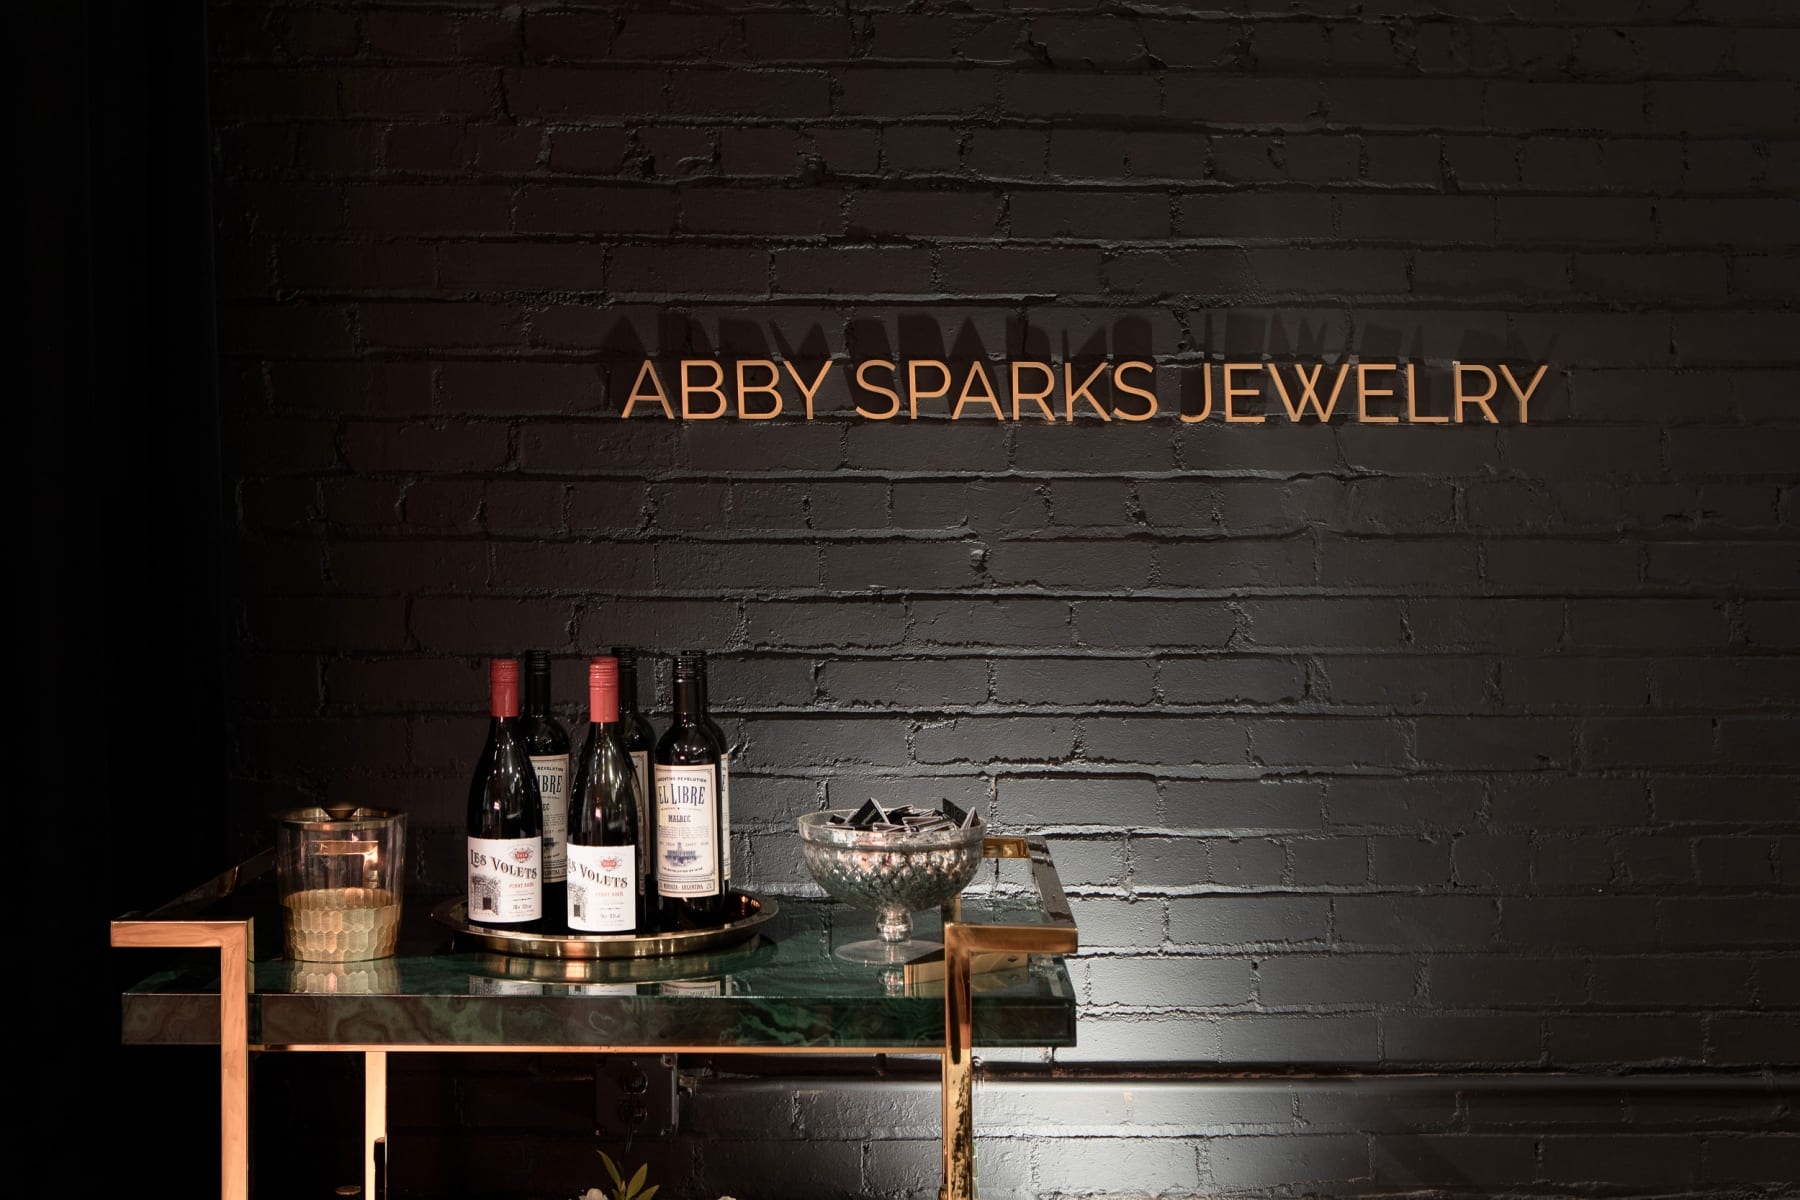 Abby Sparks Jewelry